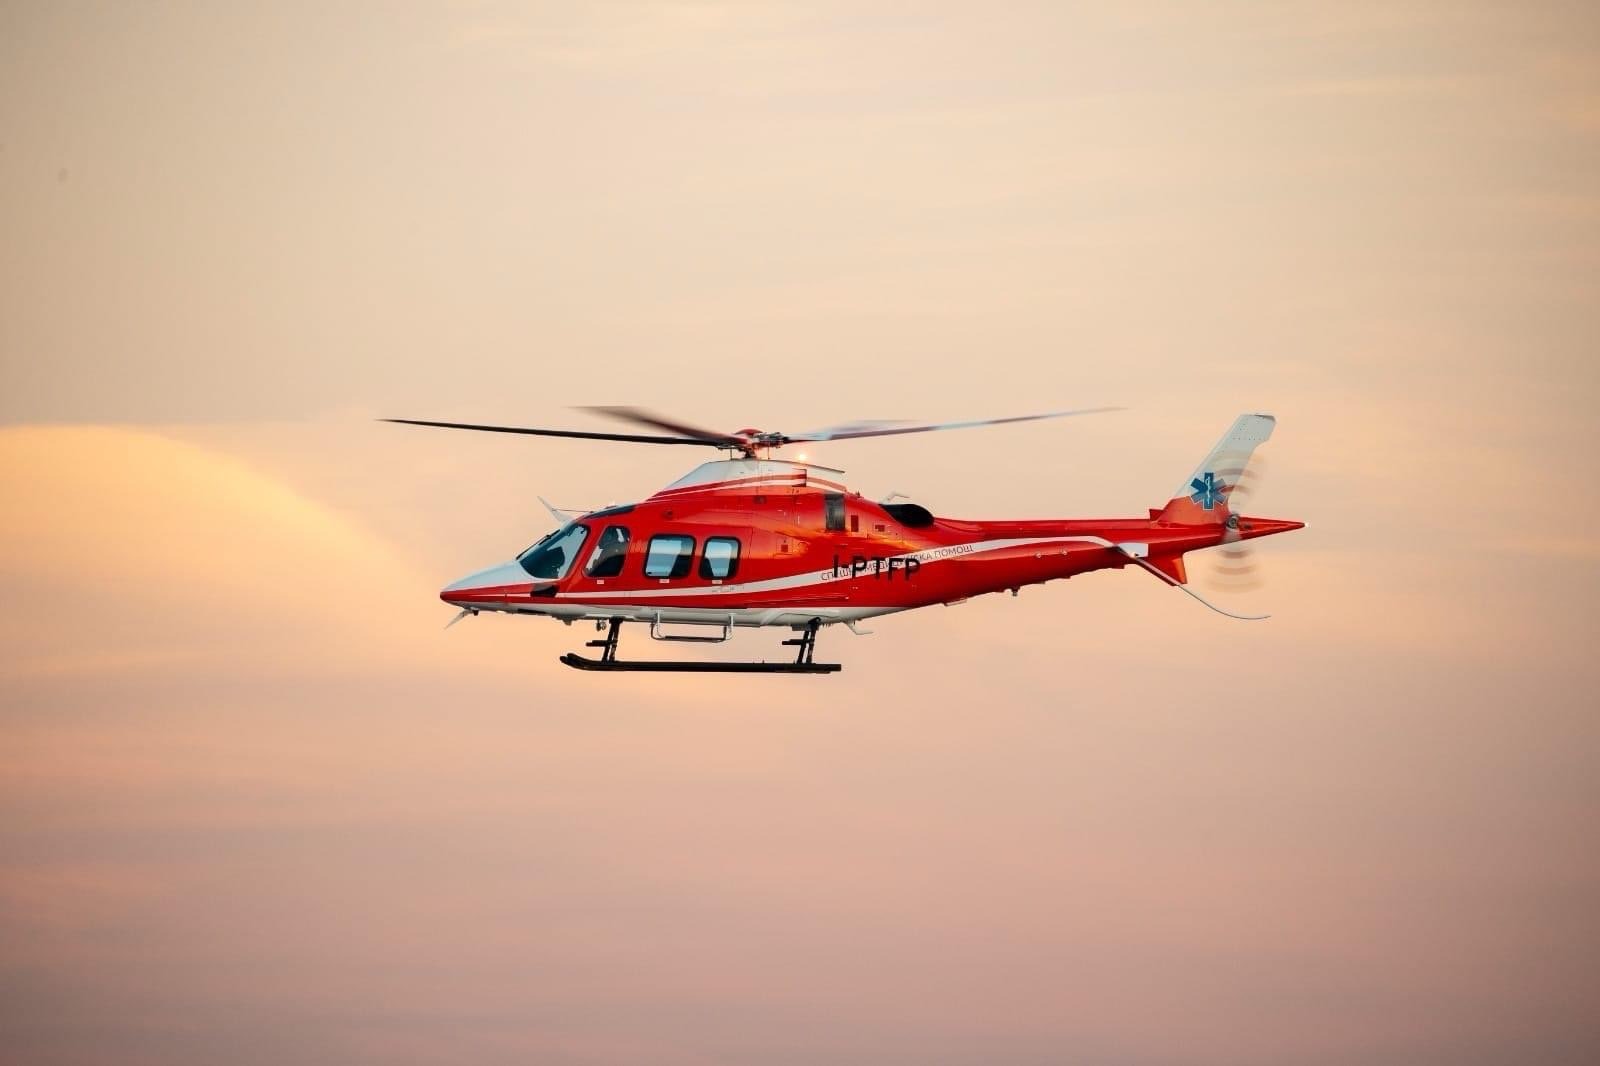 Първият медицински хеликоптер ще пристигне в София на 1 февруари